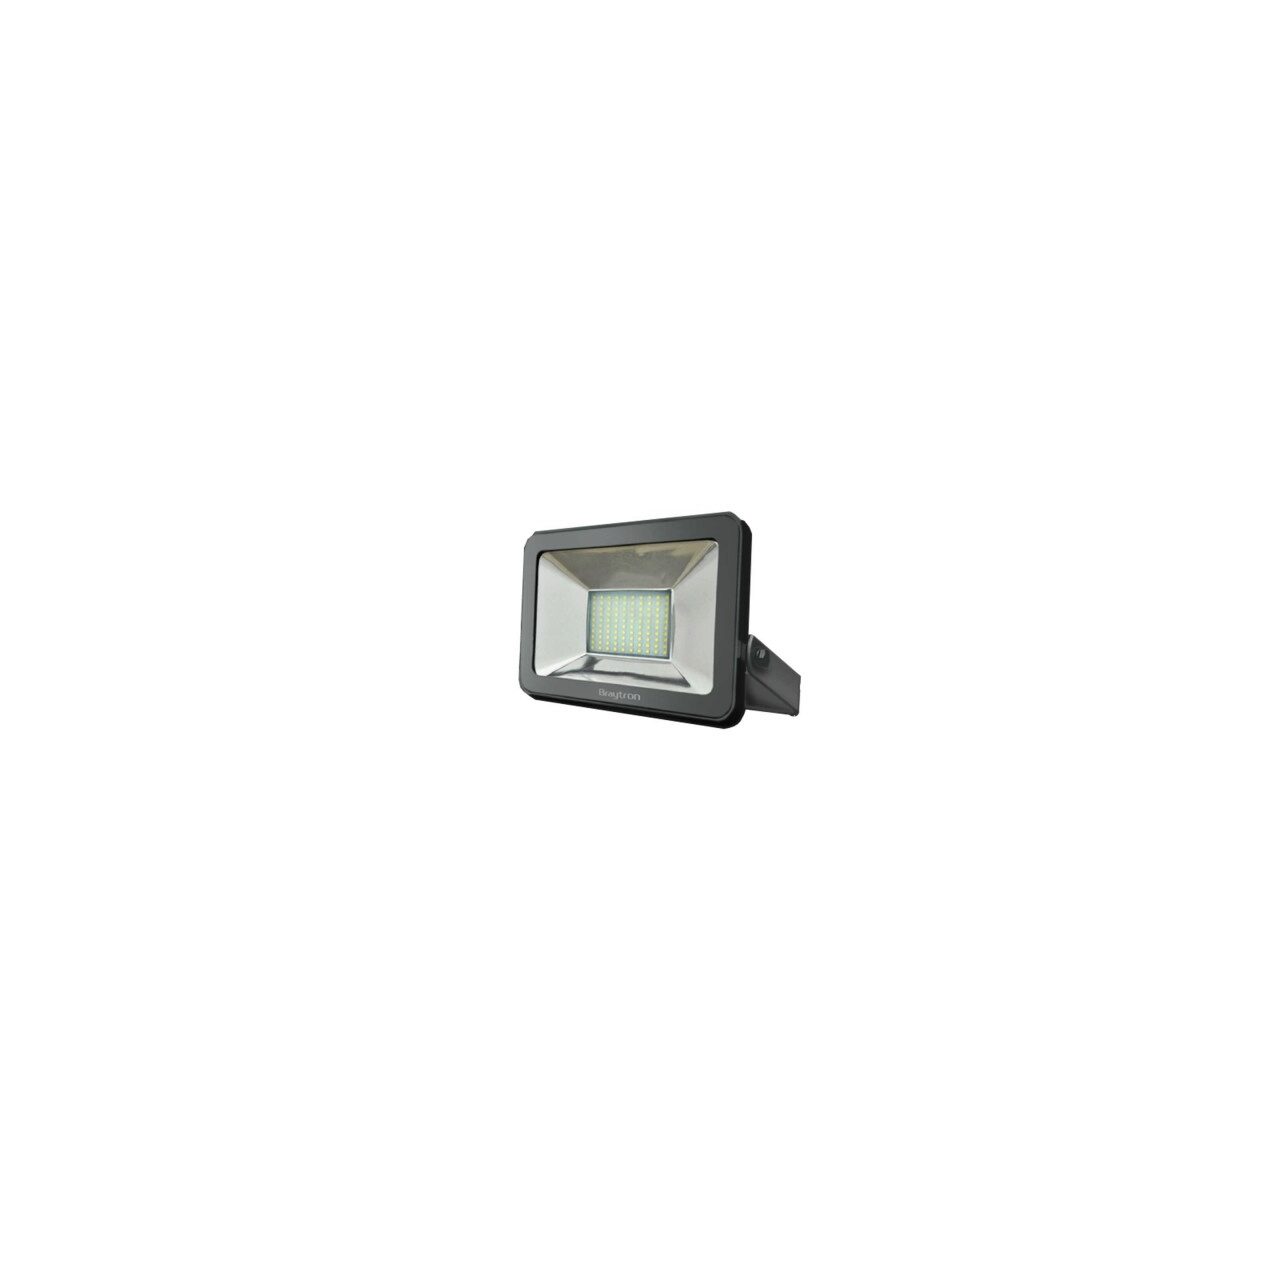 Proiectoare, iluminat stradal si industrial - PROIECTOR CU LED 1x70W IP66 BR-BT61-07032